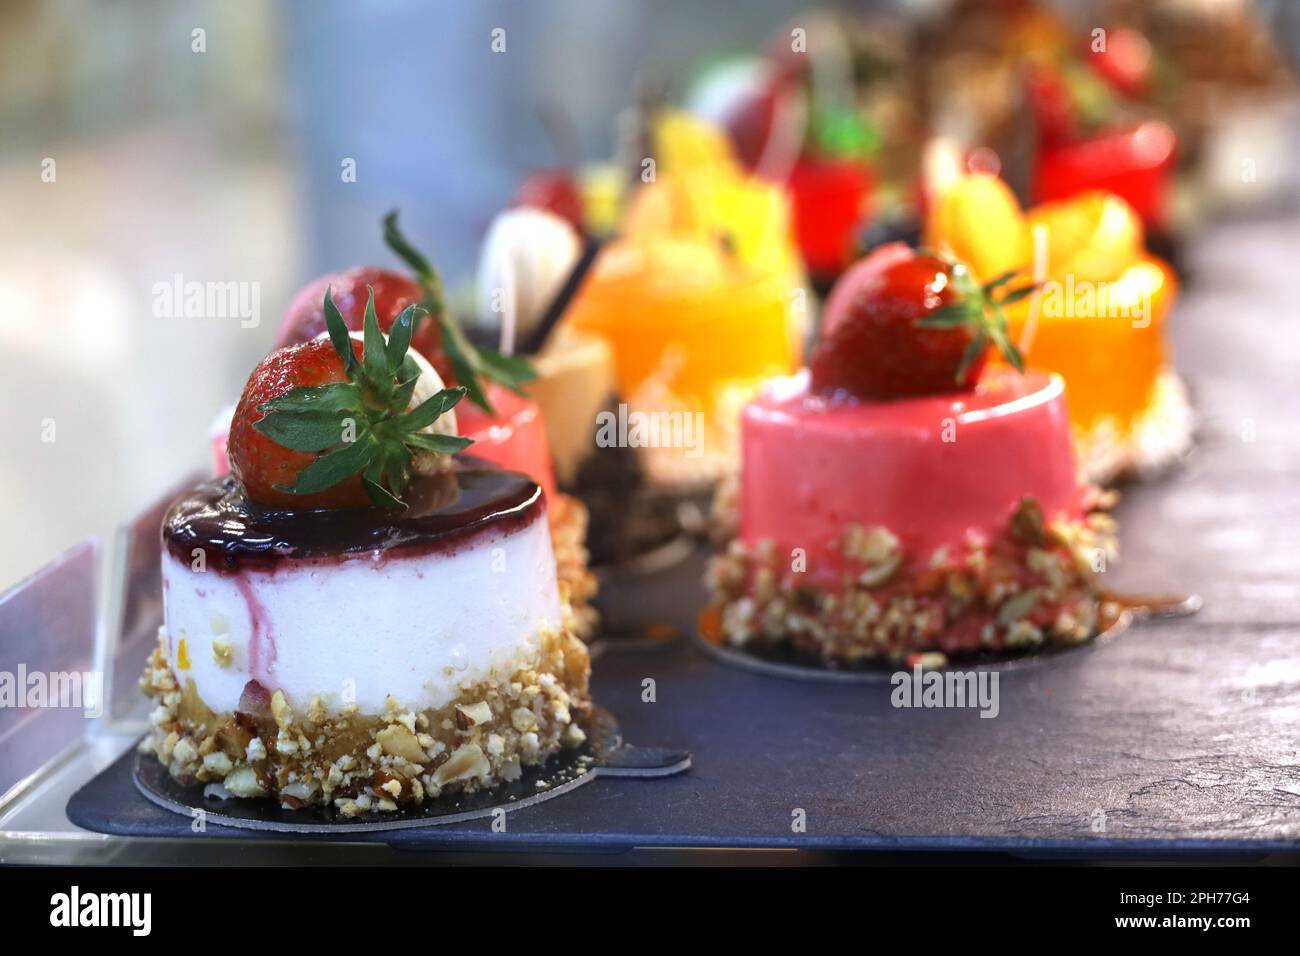 Gâteaux aux baies fraîches, concentration sélective. Desserts sucrés avec des fraises et de la crème dans le café vitrine Banque D'Images